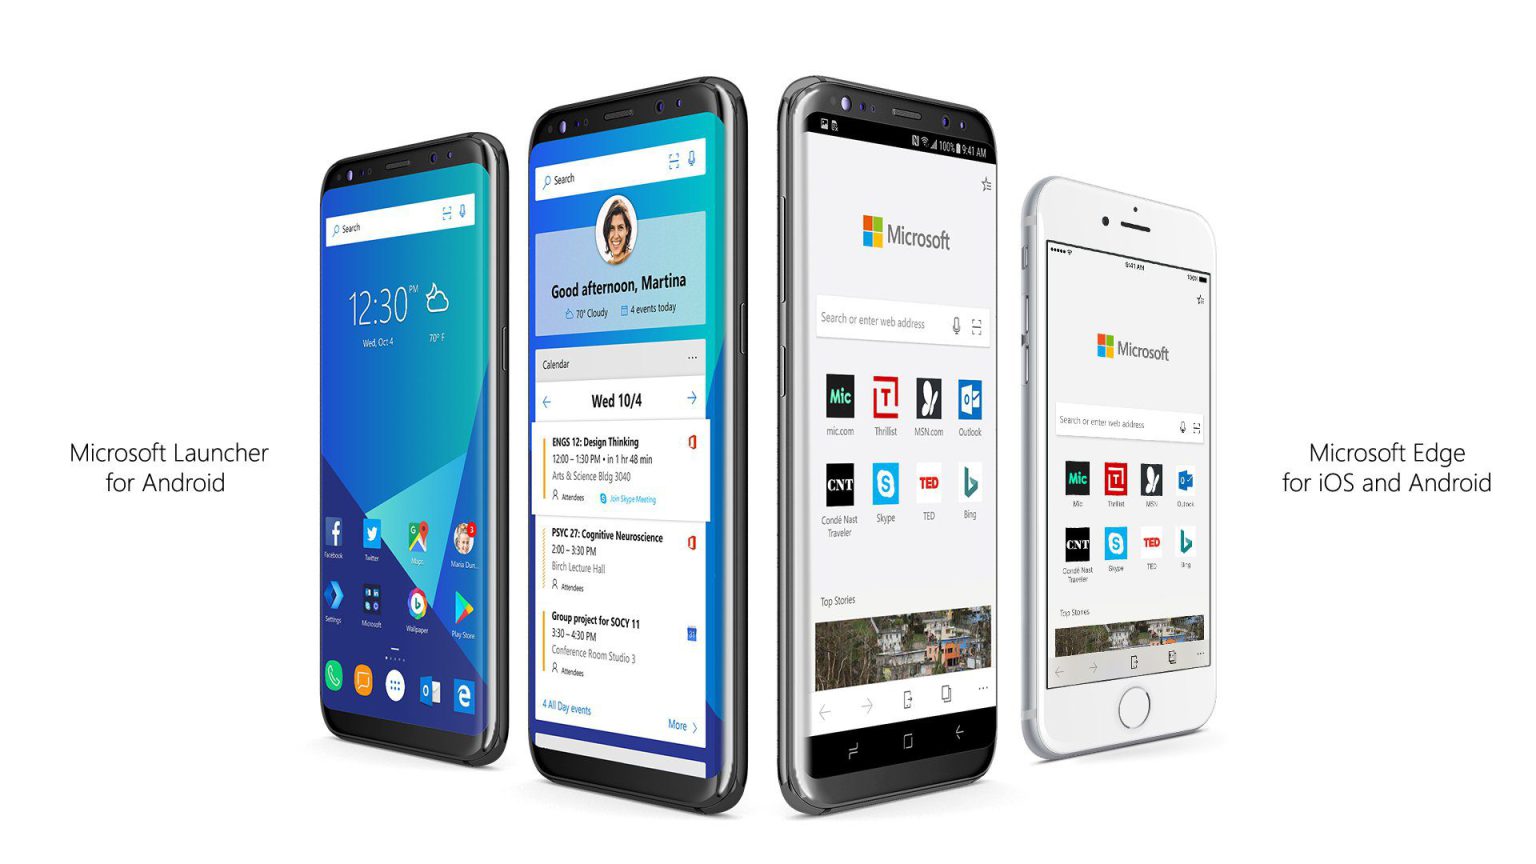 Uno de los mejores lanzadores de Android, Microsoft Launcher, mejora su estabilidad, corrige problemas de interfaz y añade nuevas funciones.